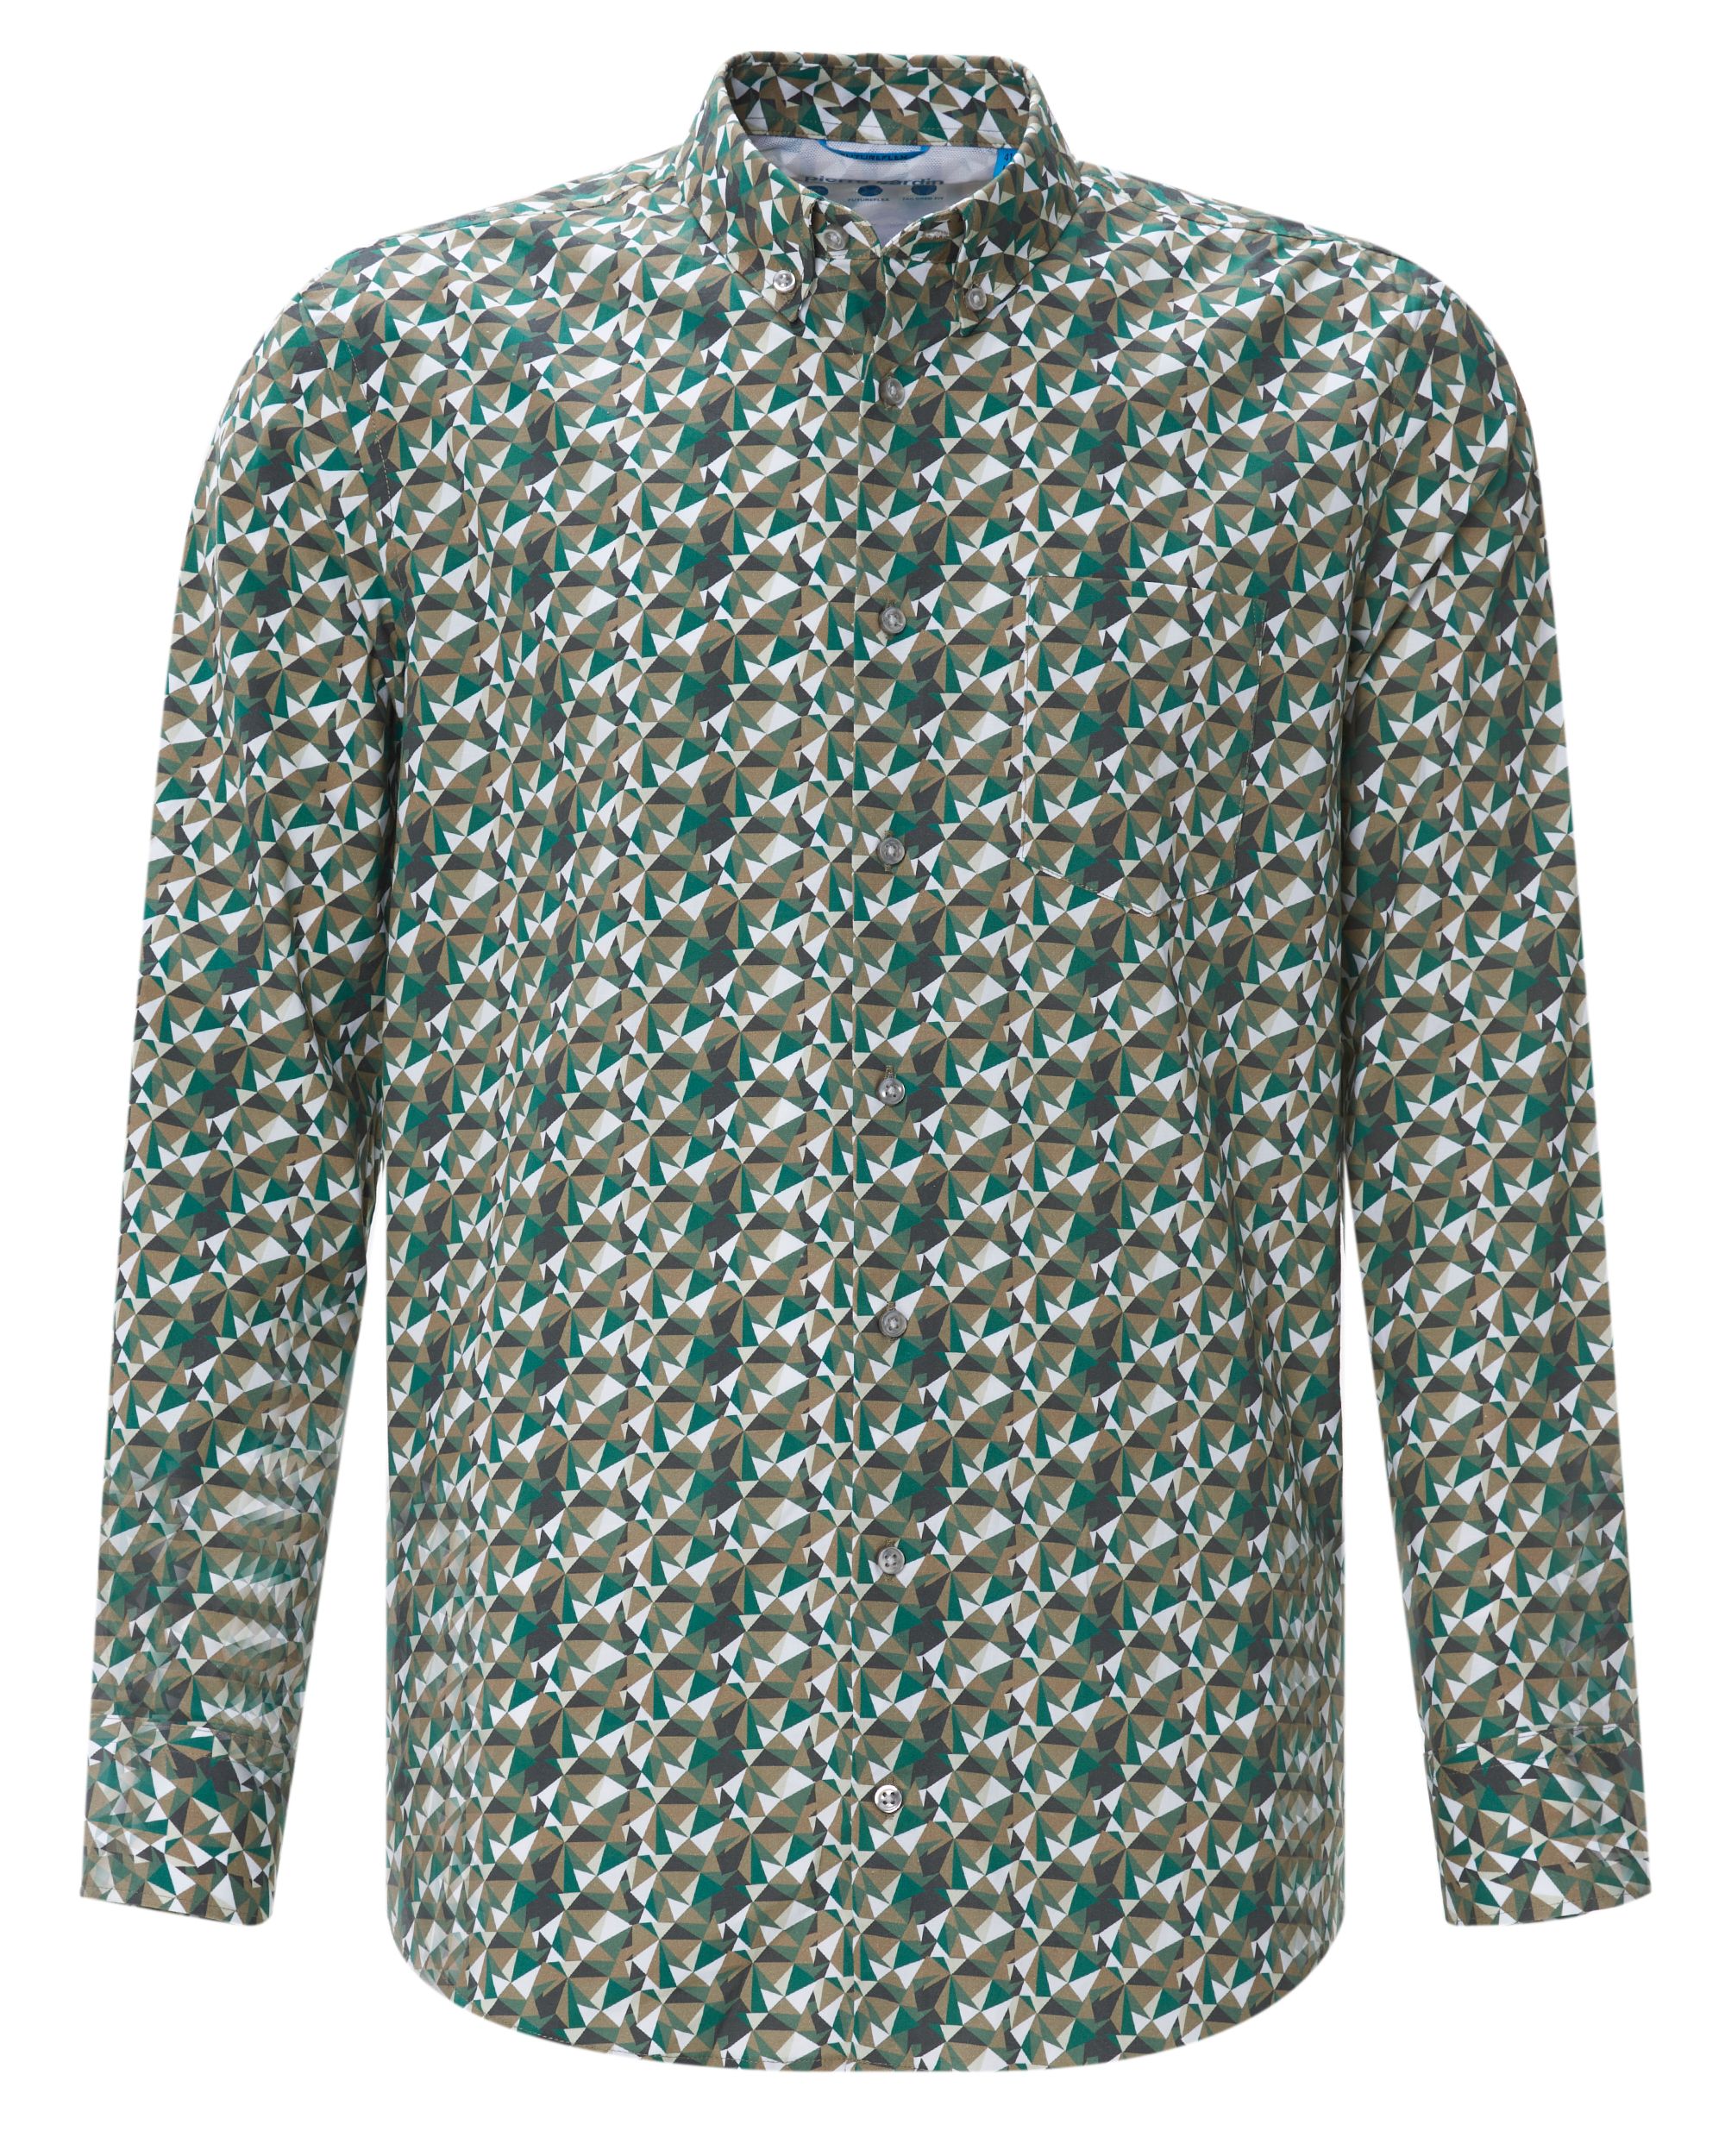 Pierre Cardin Overhemd LM Groen 078853-001-38